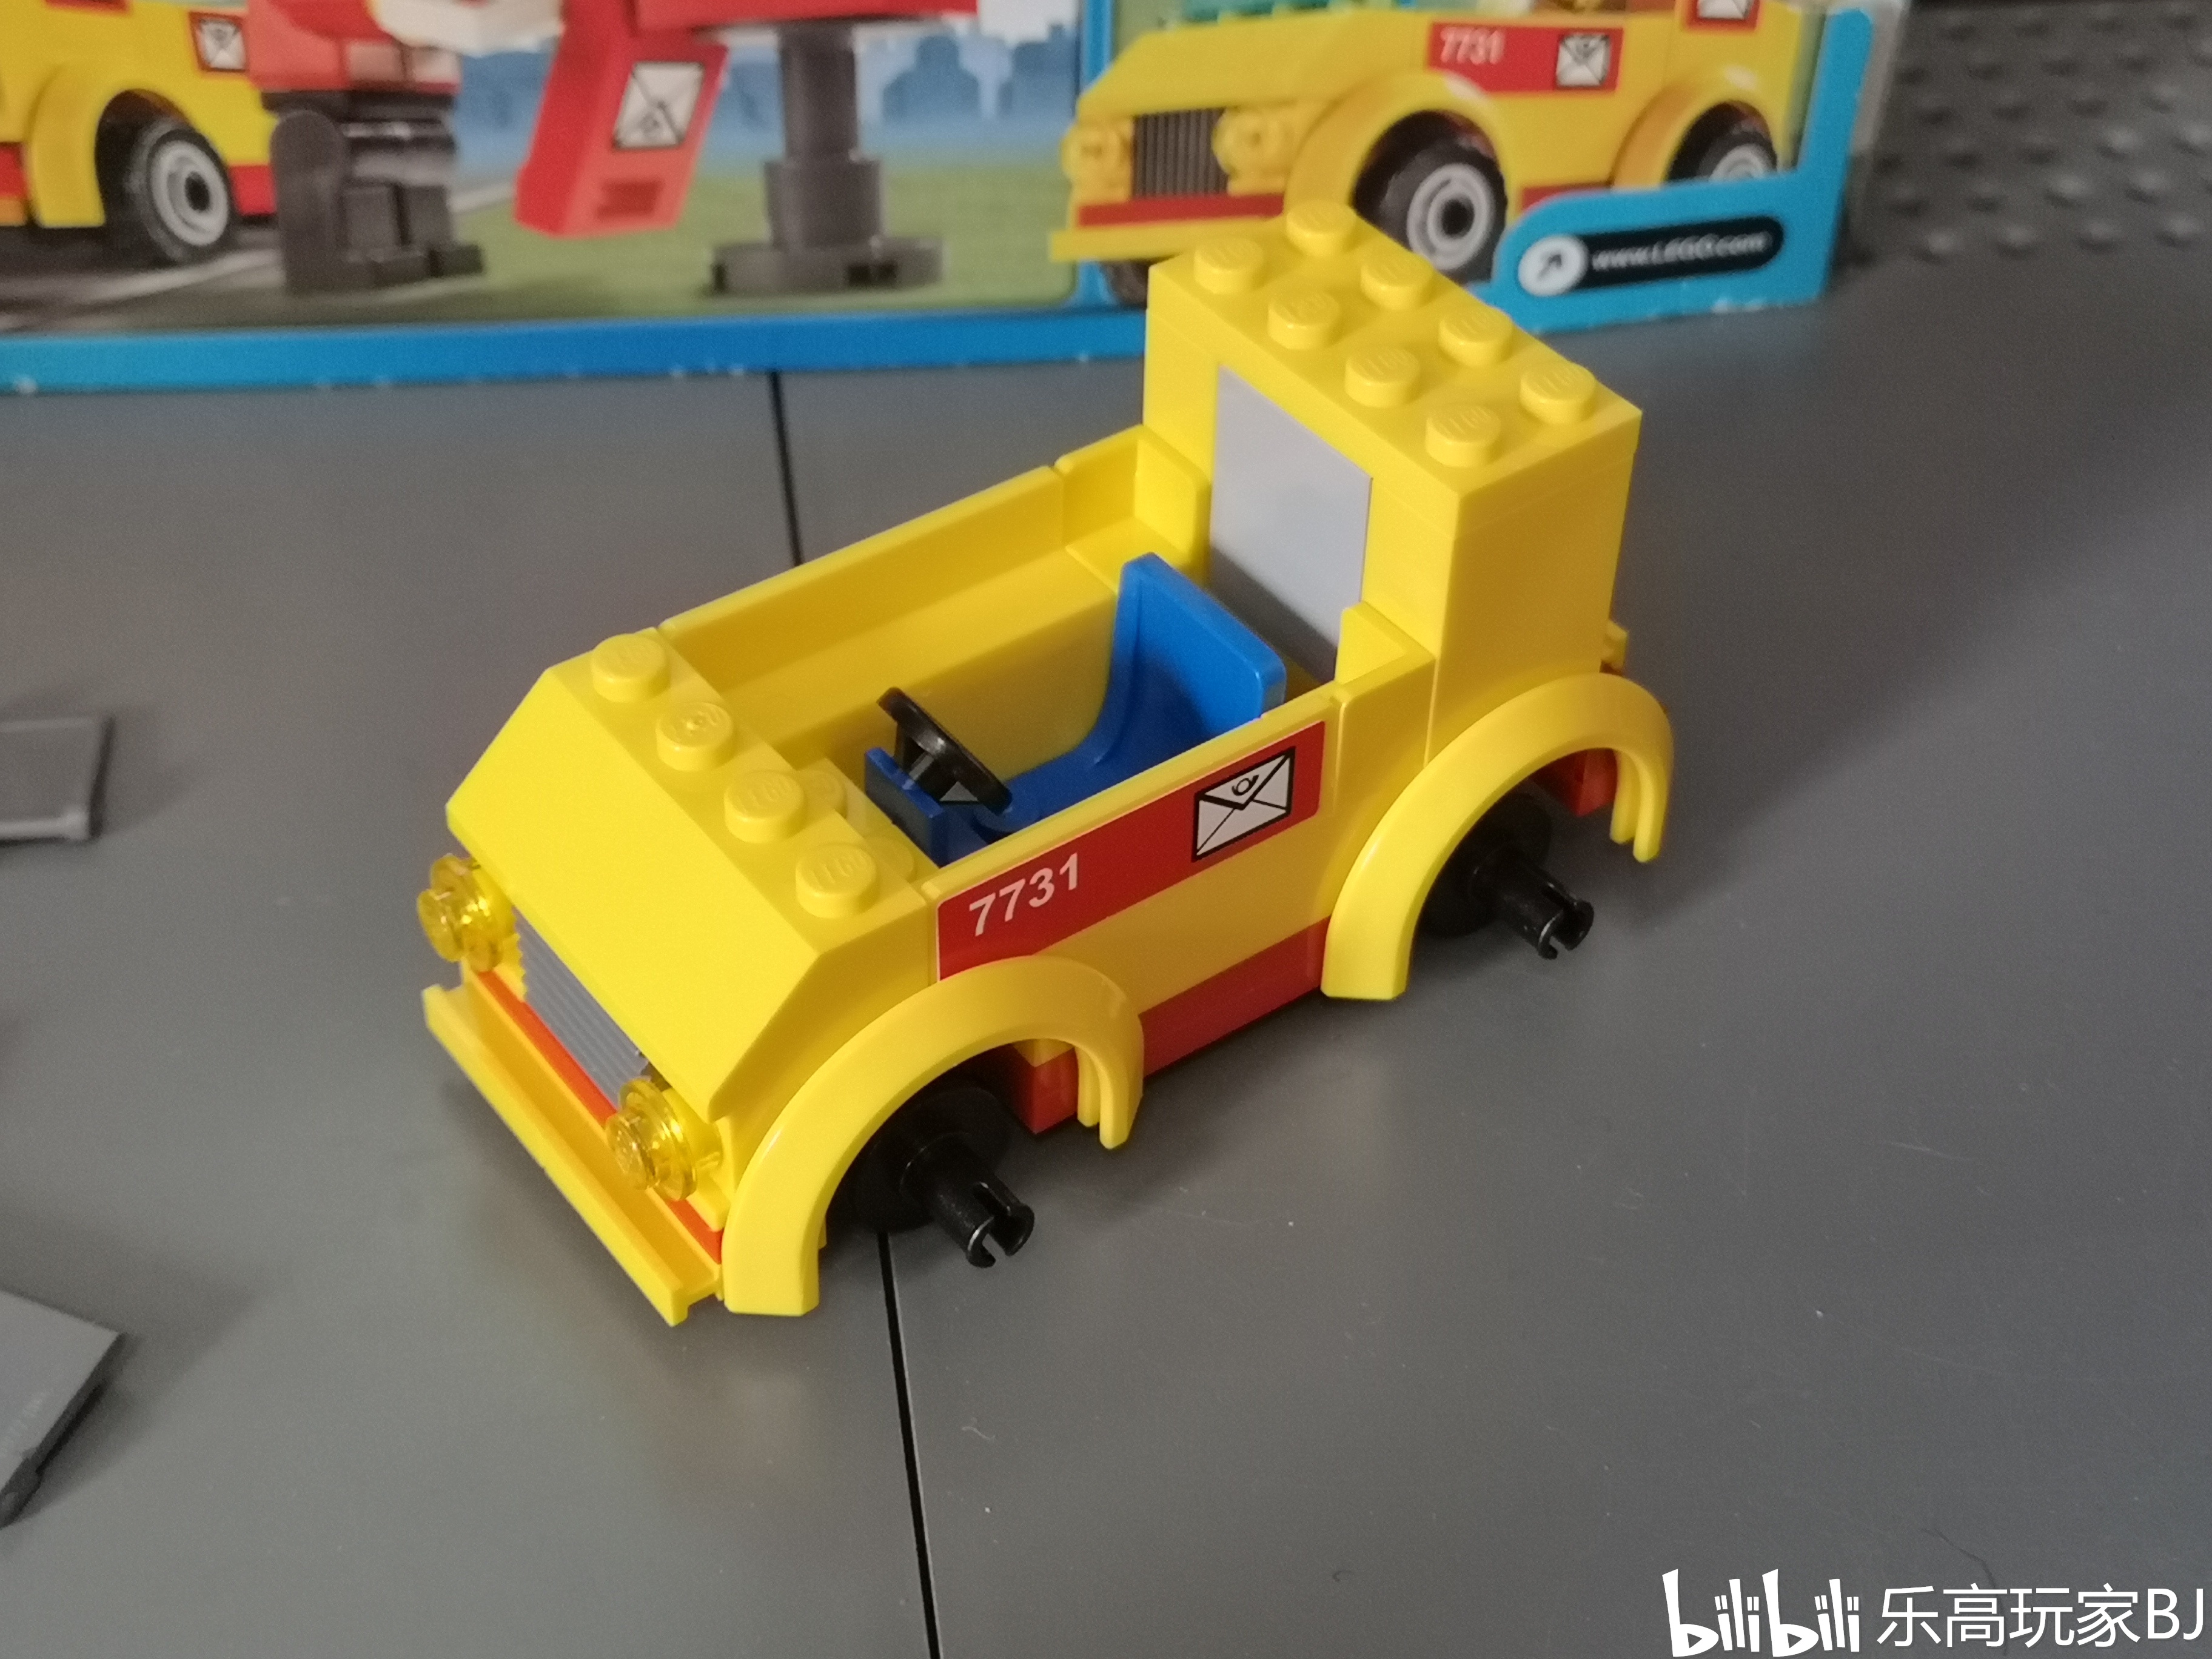 【玩家评测】乐高 lego 城市系列 7731 邮政小车